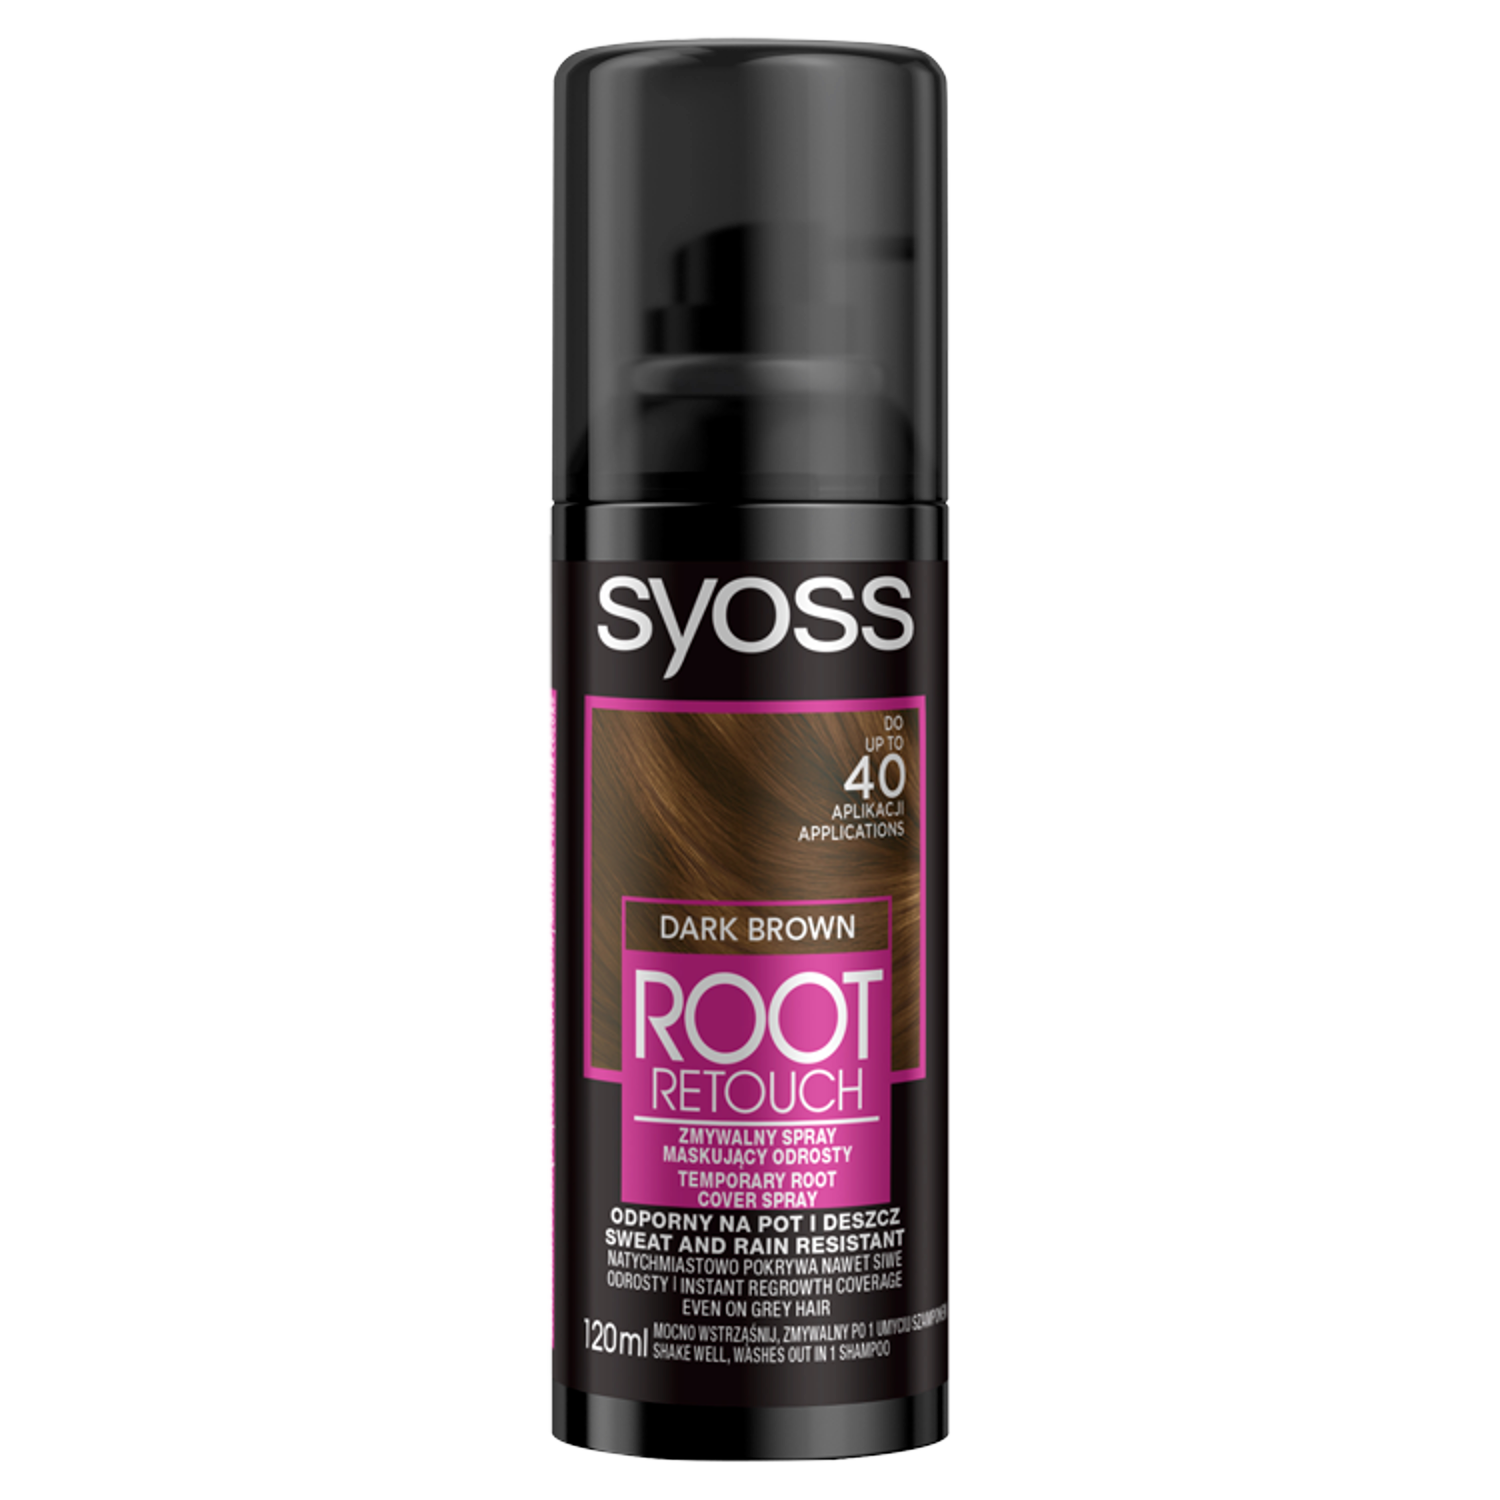 Syoss Root Retouch спрей для маскировки роста, смываемый, темно-коричневый, 120 мл